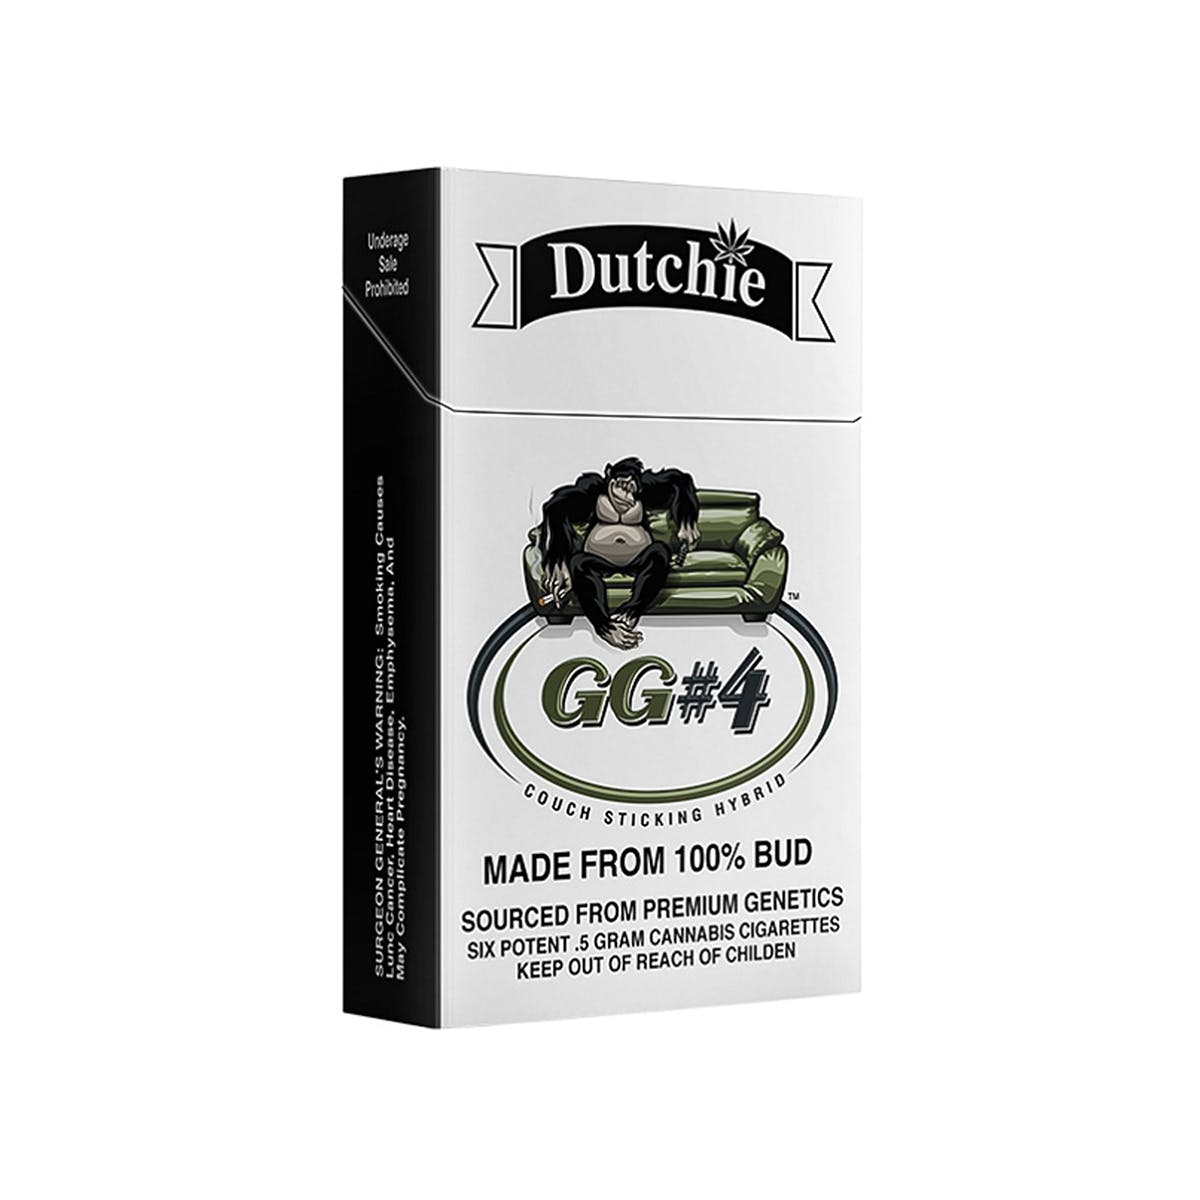 GG #4 Dutchie